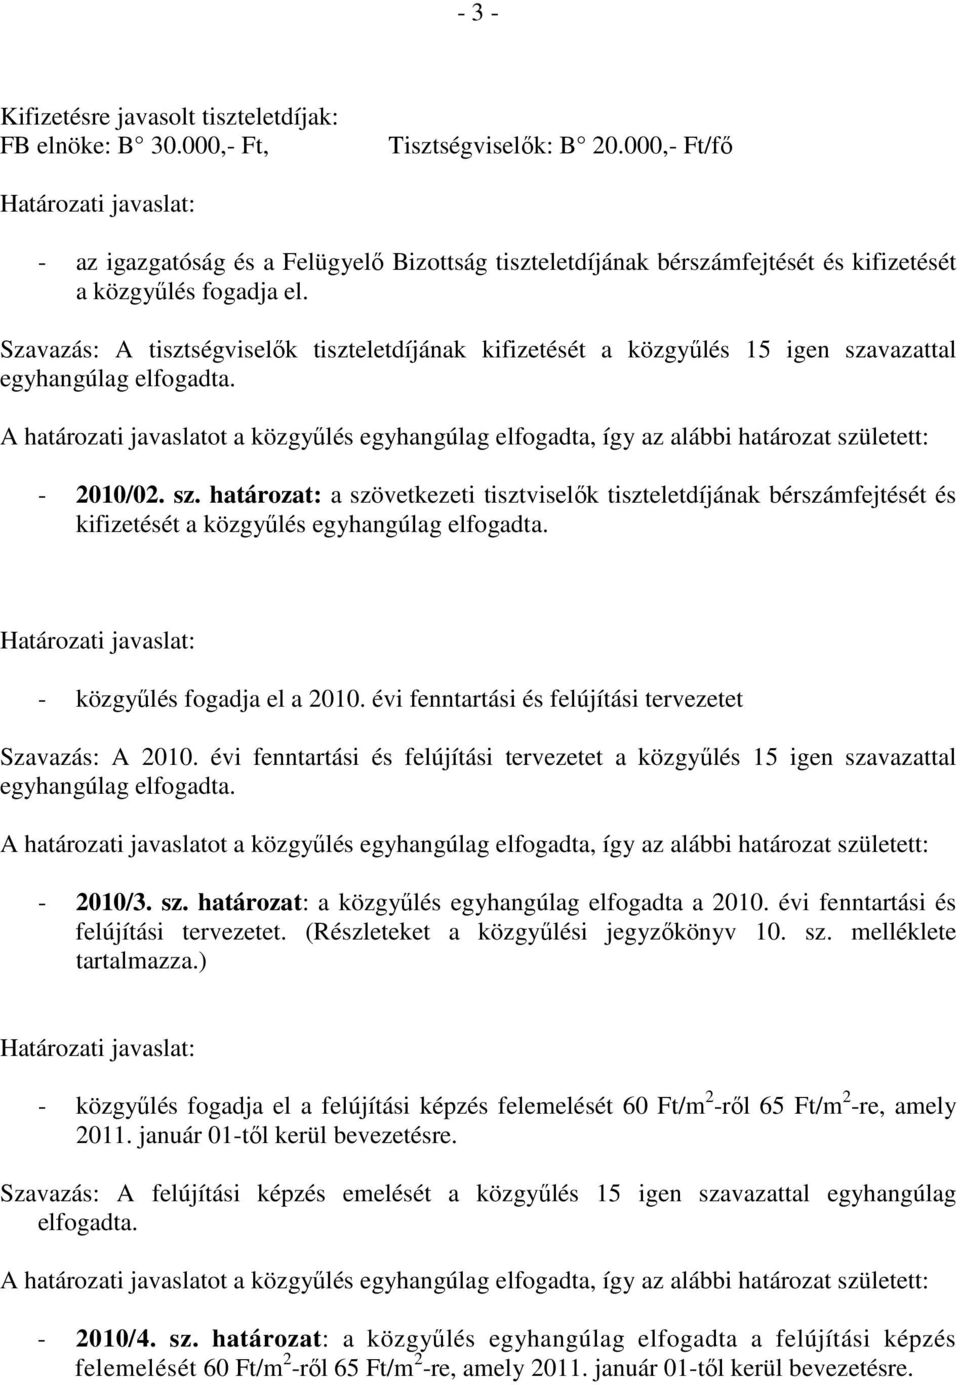 A tisztségviselık tiszteletdíjának kifizetését a közgyőlés 15 igen szavazattal egyhangúlag elfogadta.